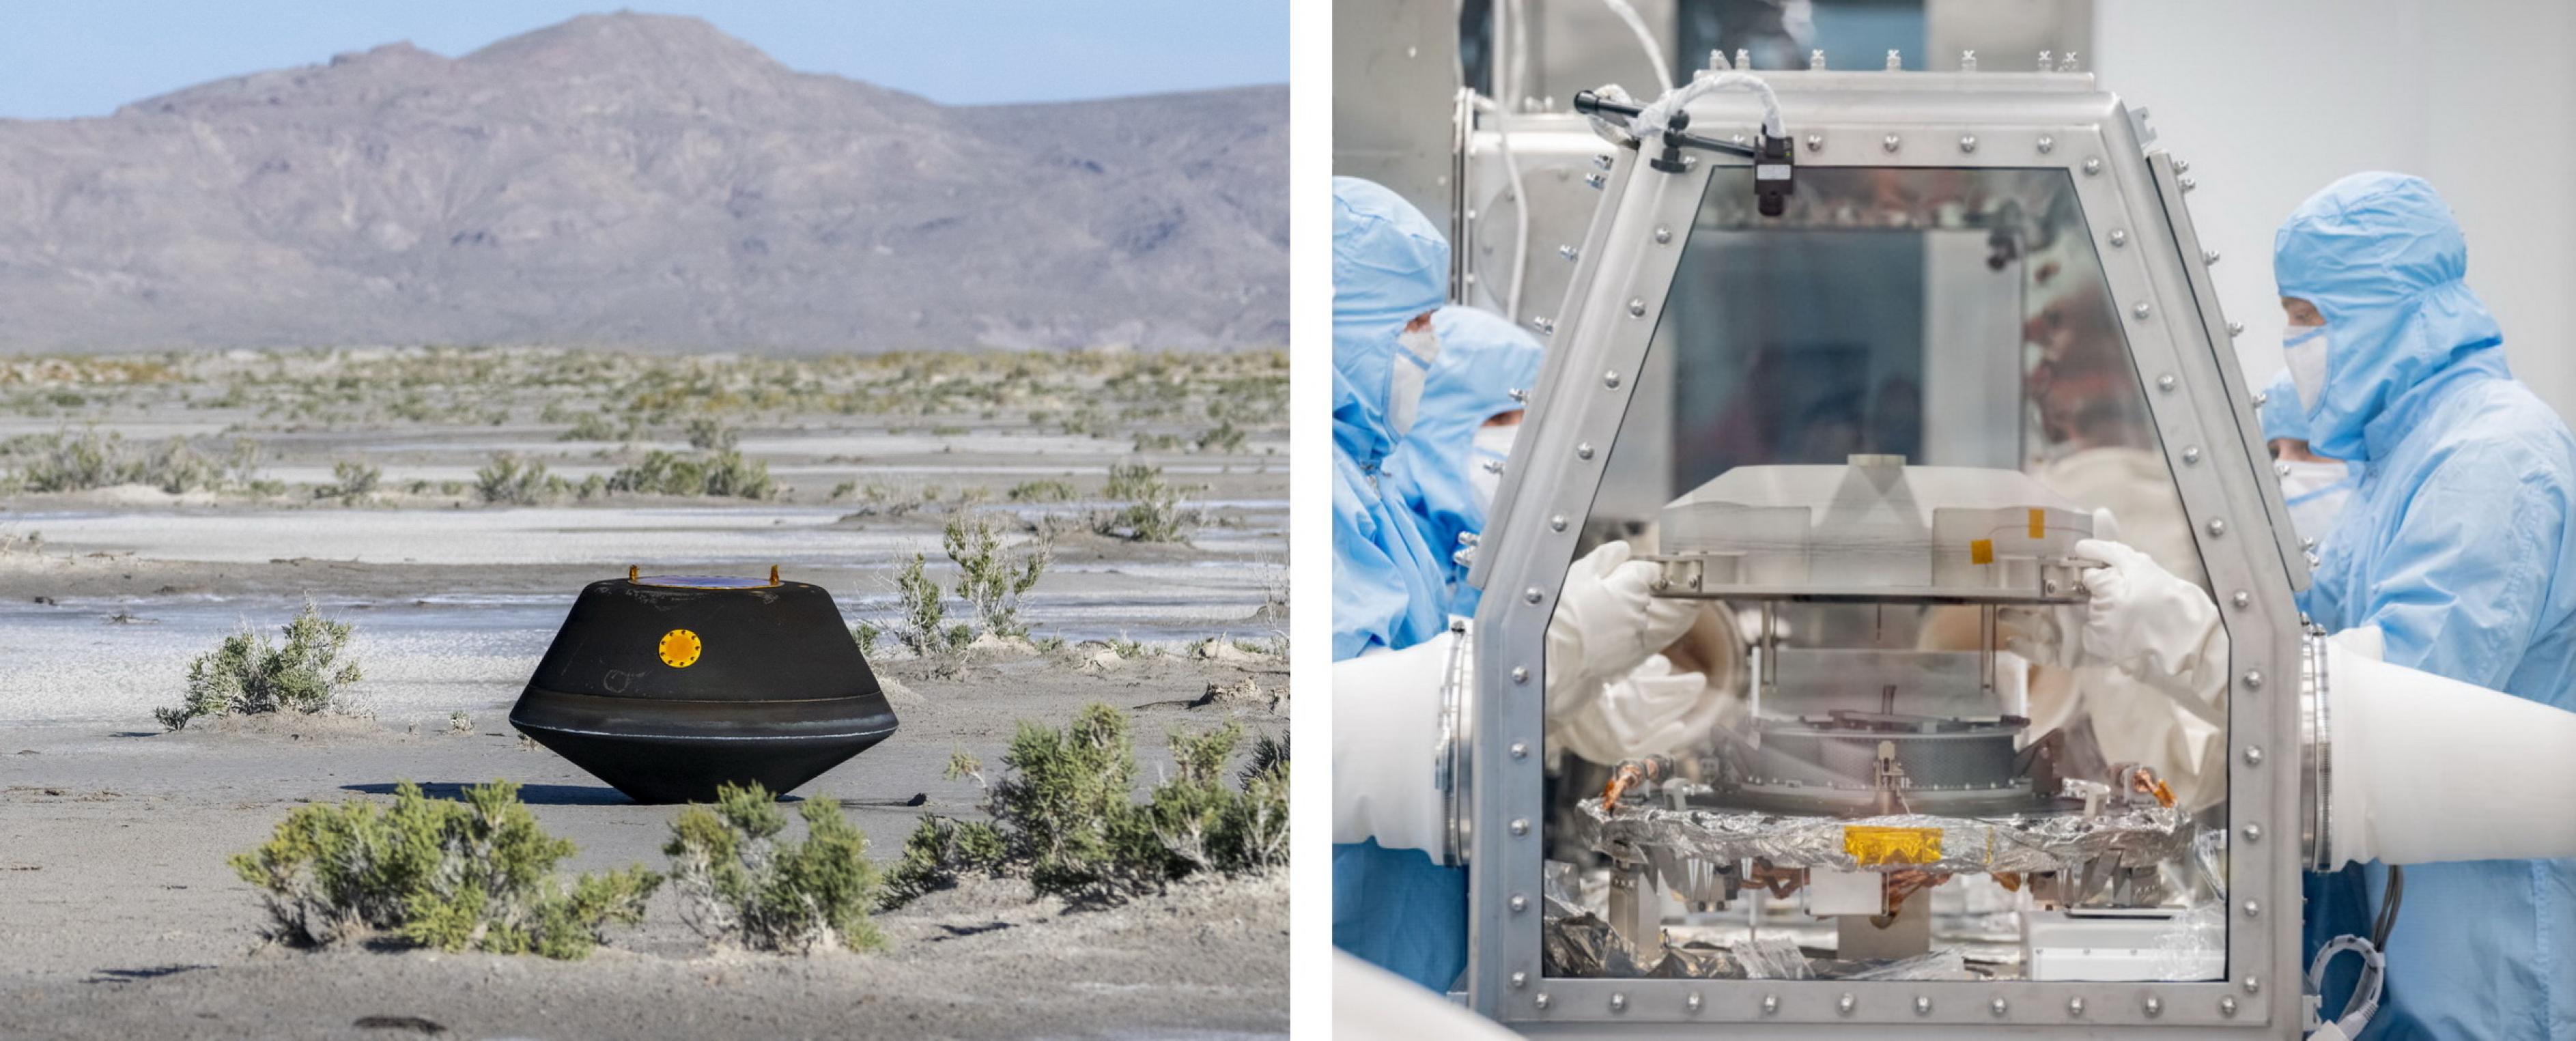 Częściowe zdjęcie po lewej stronie przedstawia kapsułę powrotną, czarną w wyniku ponownego wejścia w atmosferę ziemską, w miejscu lądowania na pustyni w Utah.  W prawej części zdjęcia naukowcy ubrani w odzież ochronną ostrożnie otwierają kapsułę zwrotną znajdującą się w szklanym schowku.